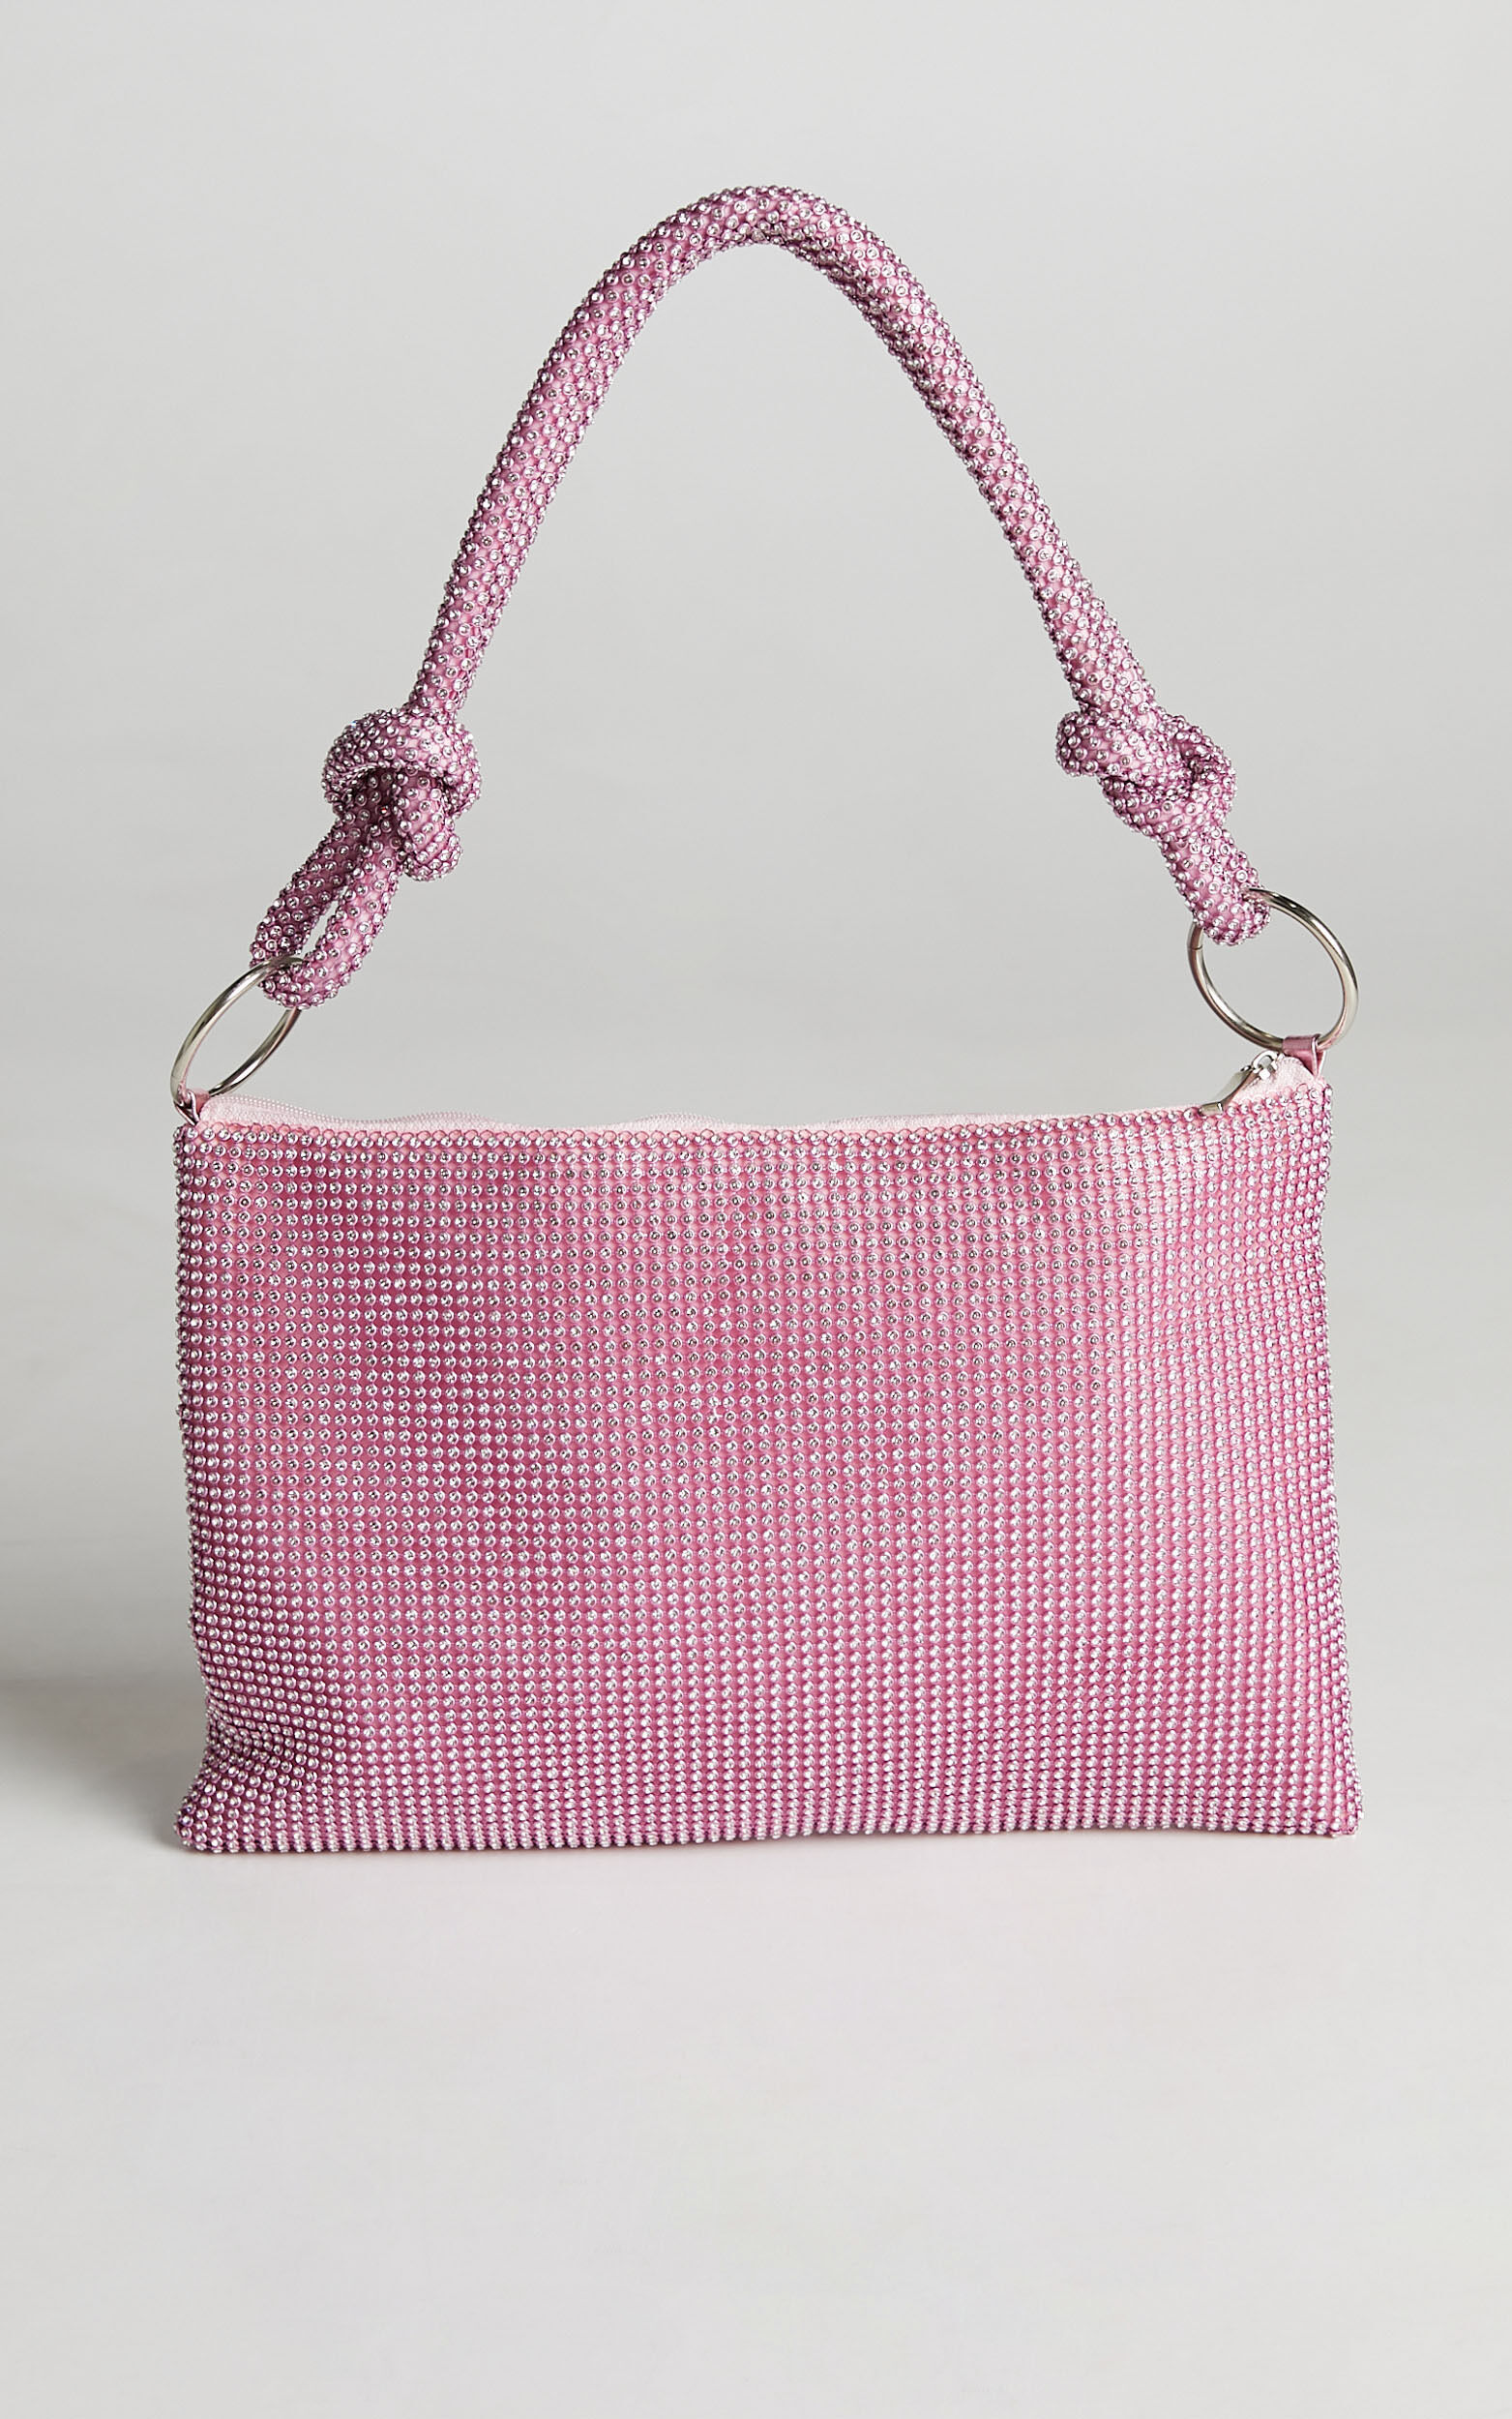 Afrin Glomesh Bag in Pink - NoSize, PNK2, super-hi-res image number null